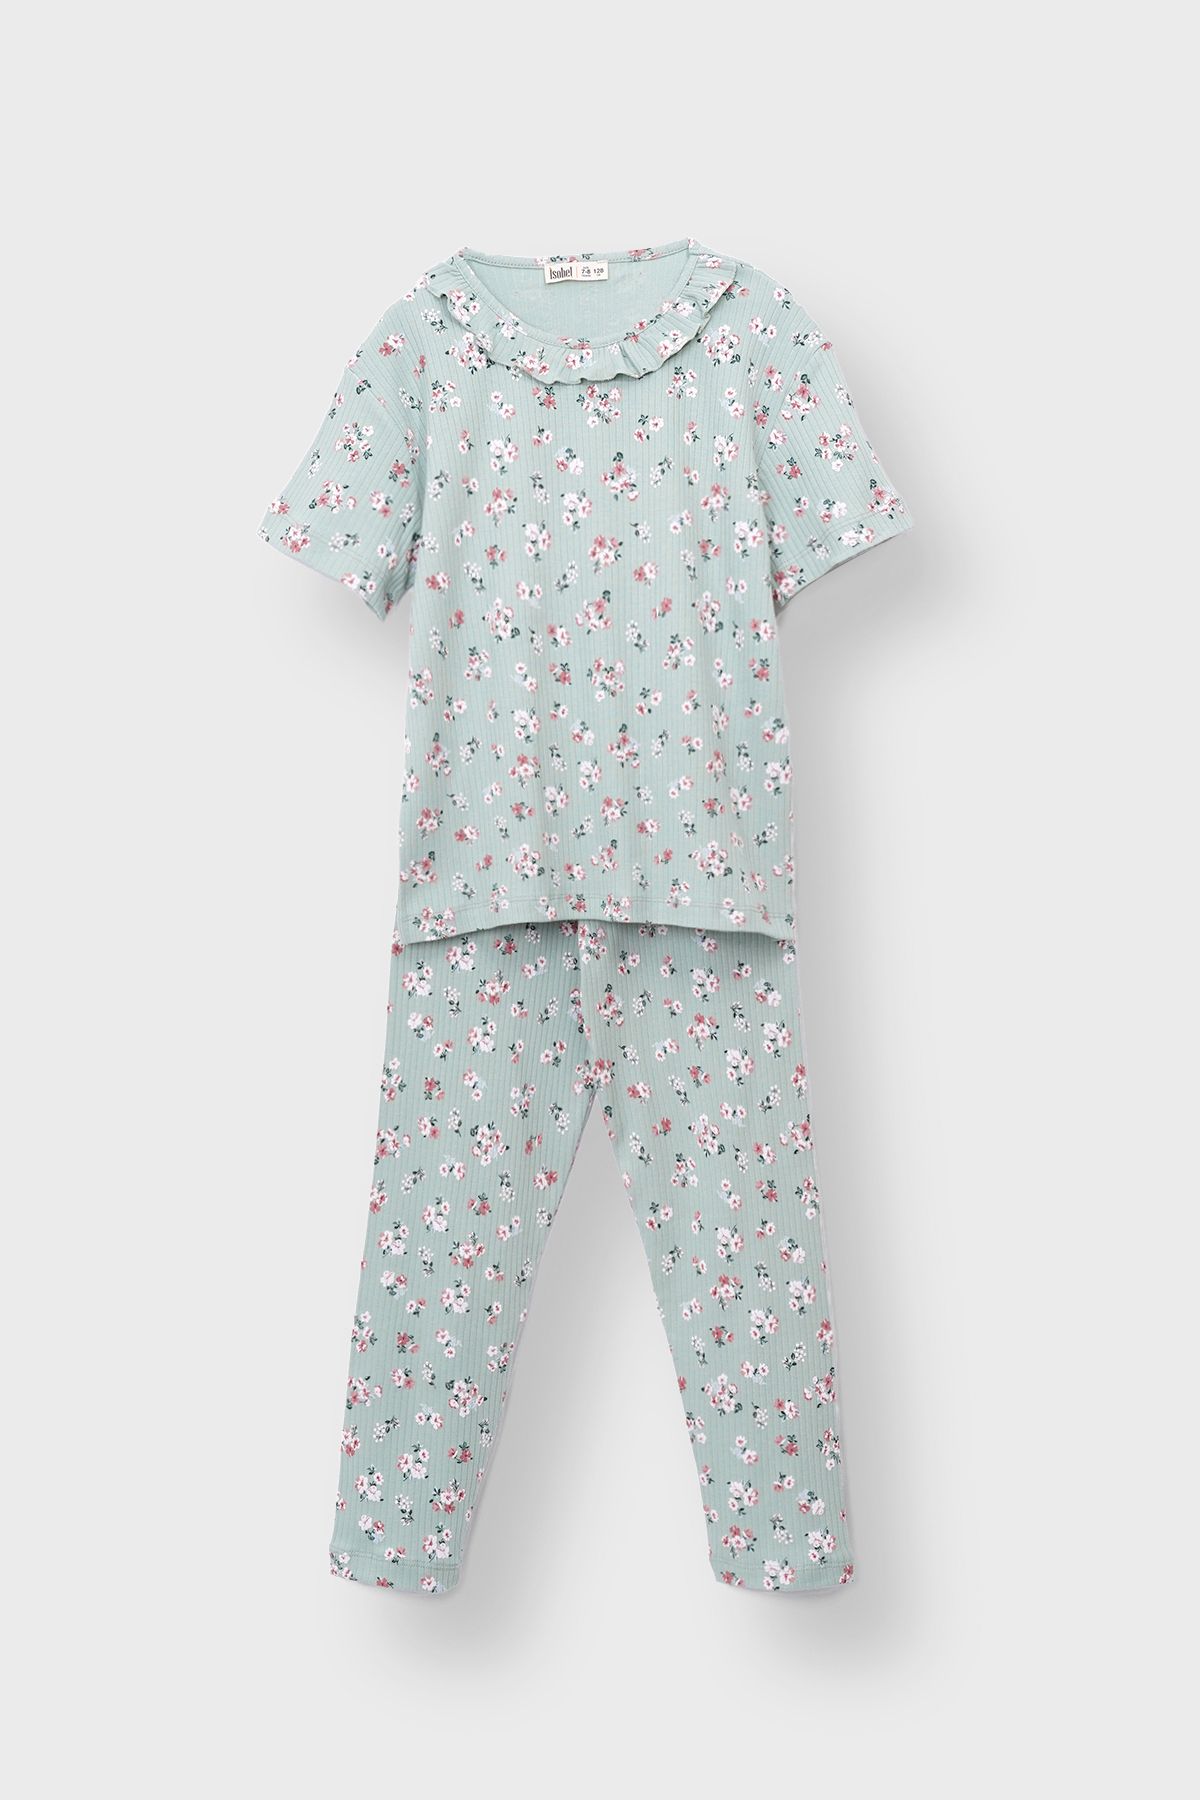 ZUZUNGA Flowering Kısa Kollu Çiçek Desenli Kız Çocuk Pijama Takımı